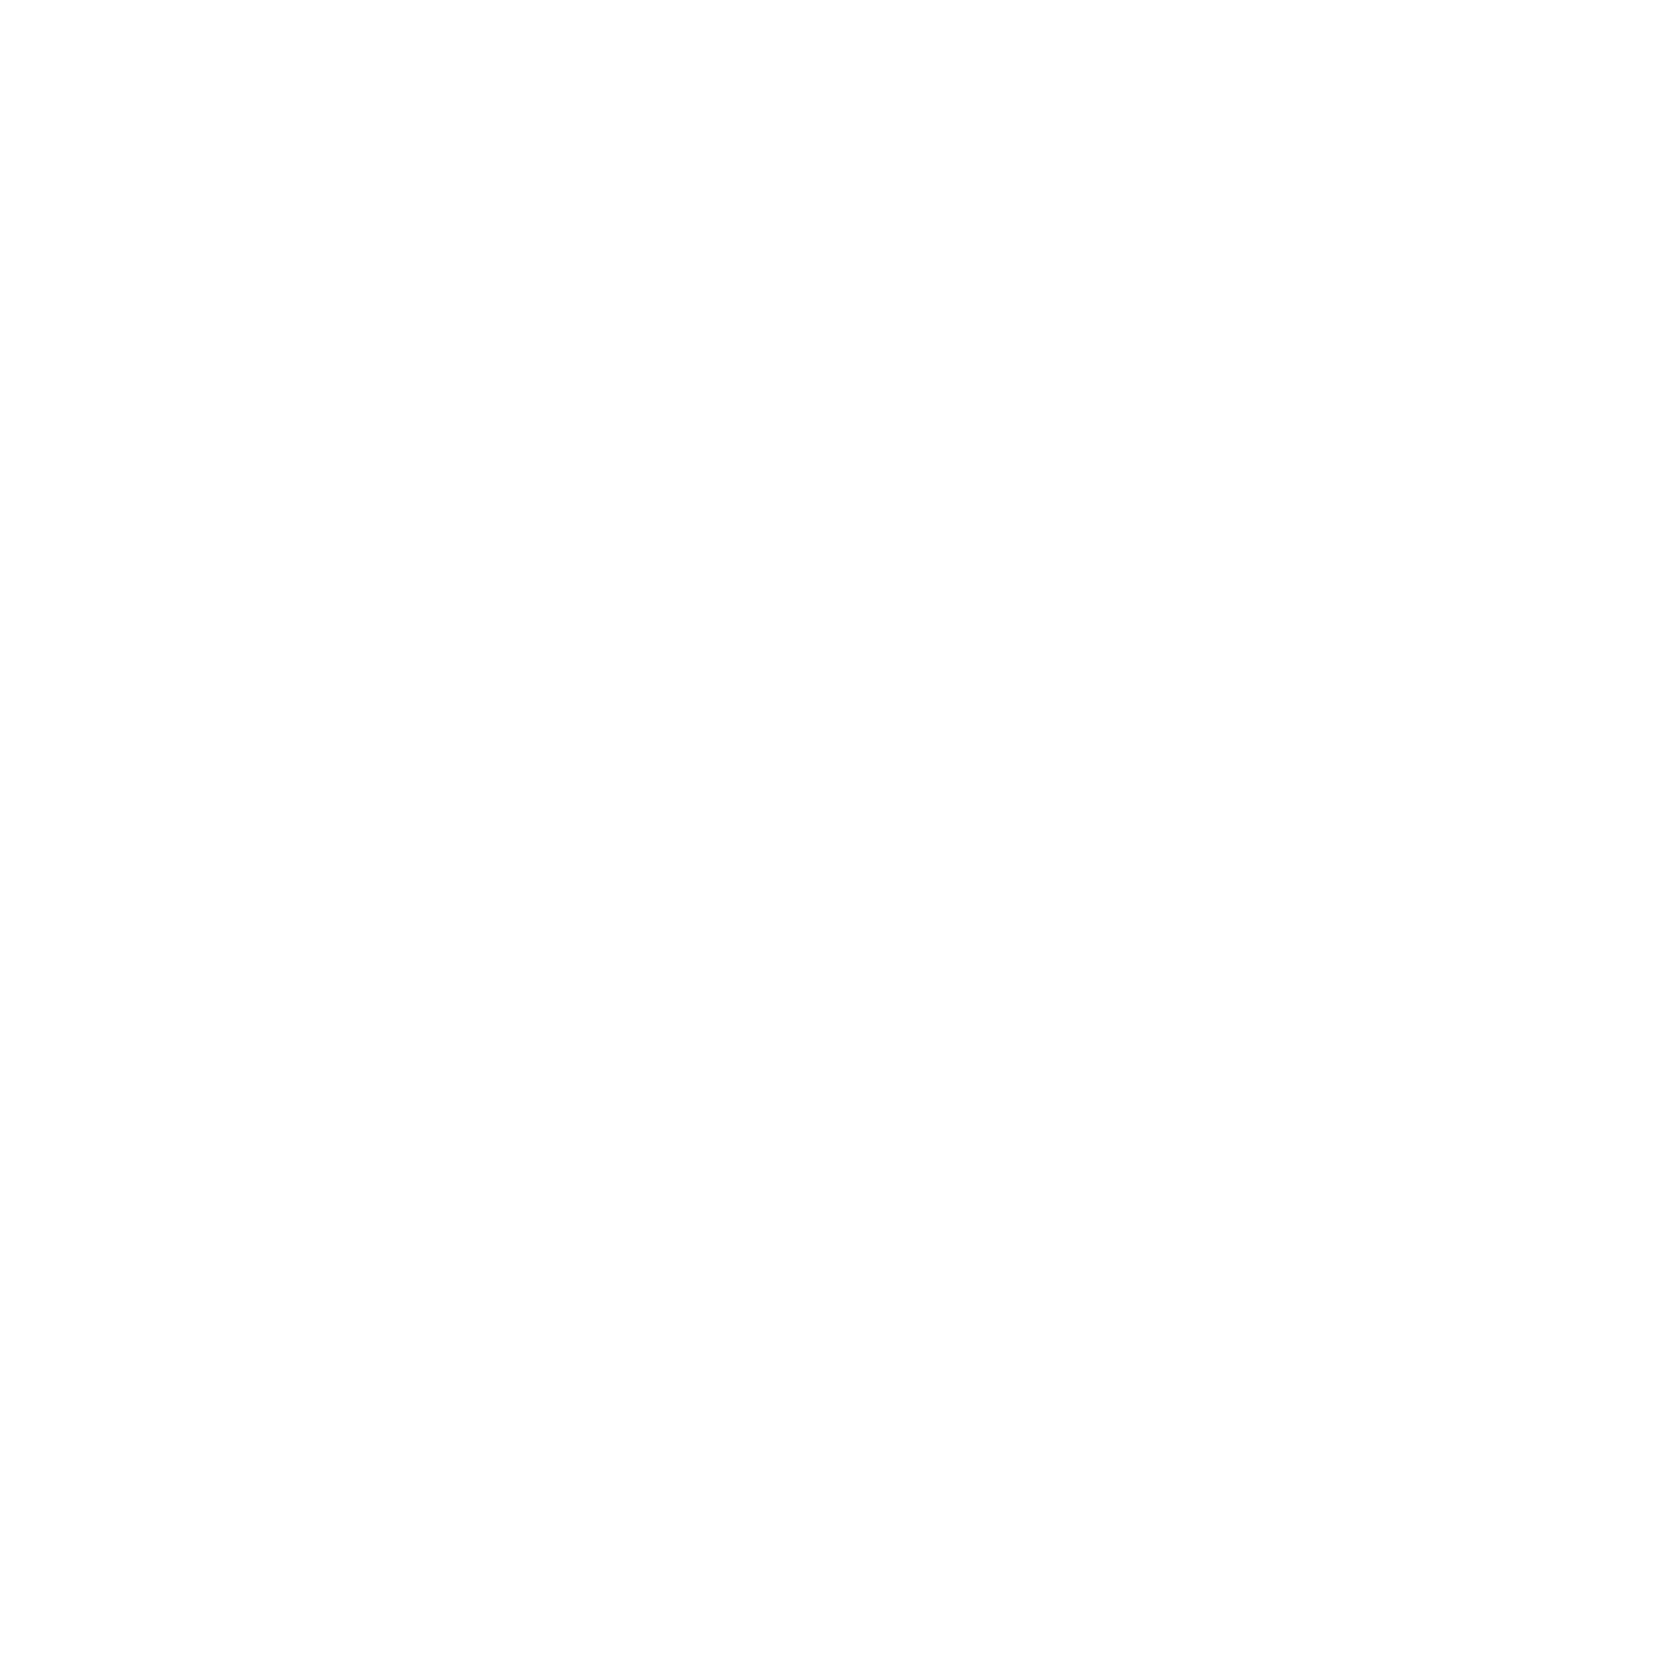 Художник Чан Дык Минь. Пейзаж «Без названия». Холст, масло, 2019 г., 20 х 37 см, купить картину